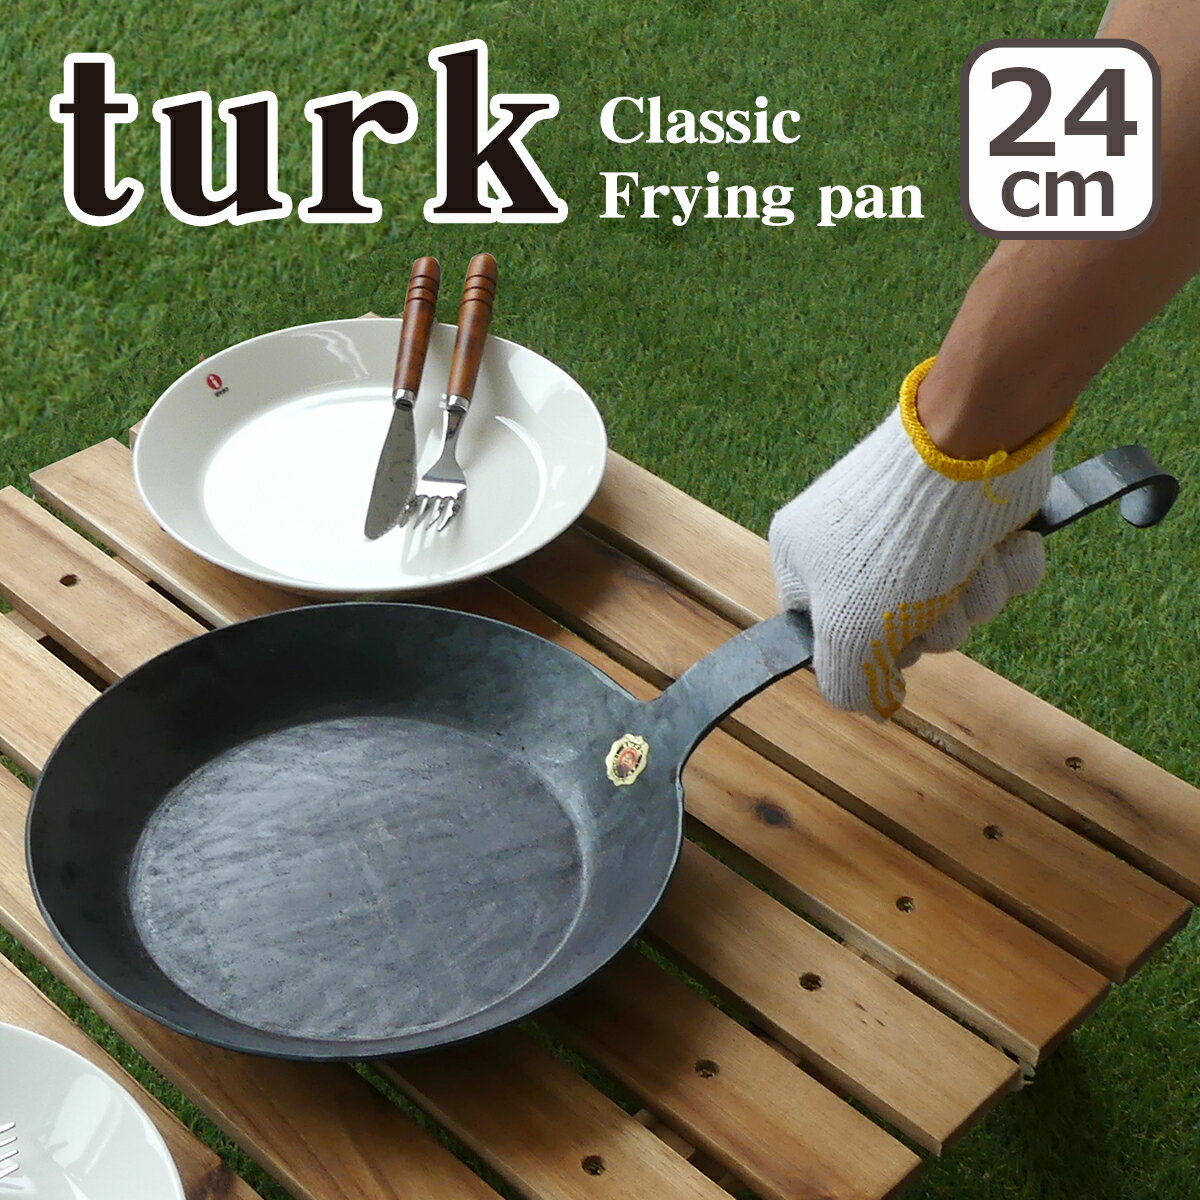 ターク フライパン クラシック 24cm 65524 turk Classic Frying pan